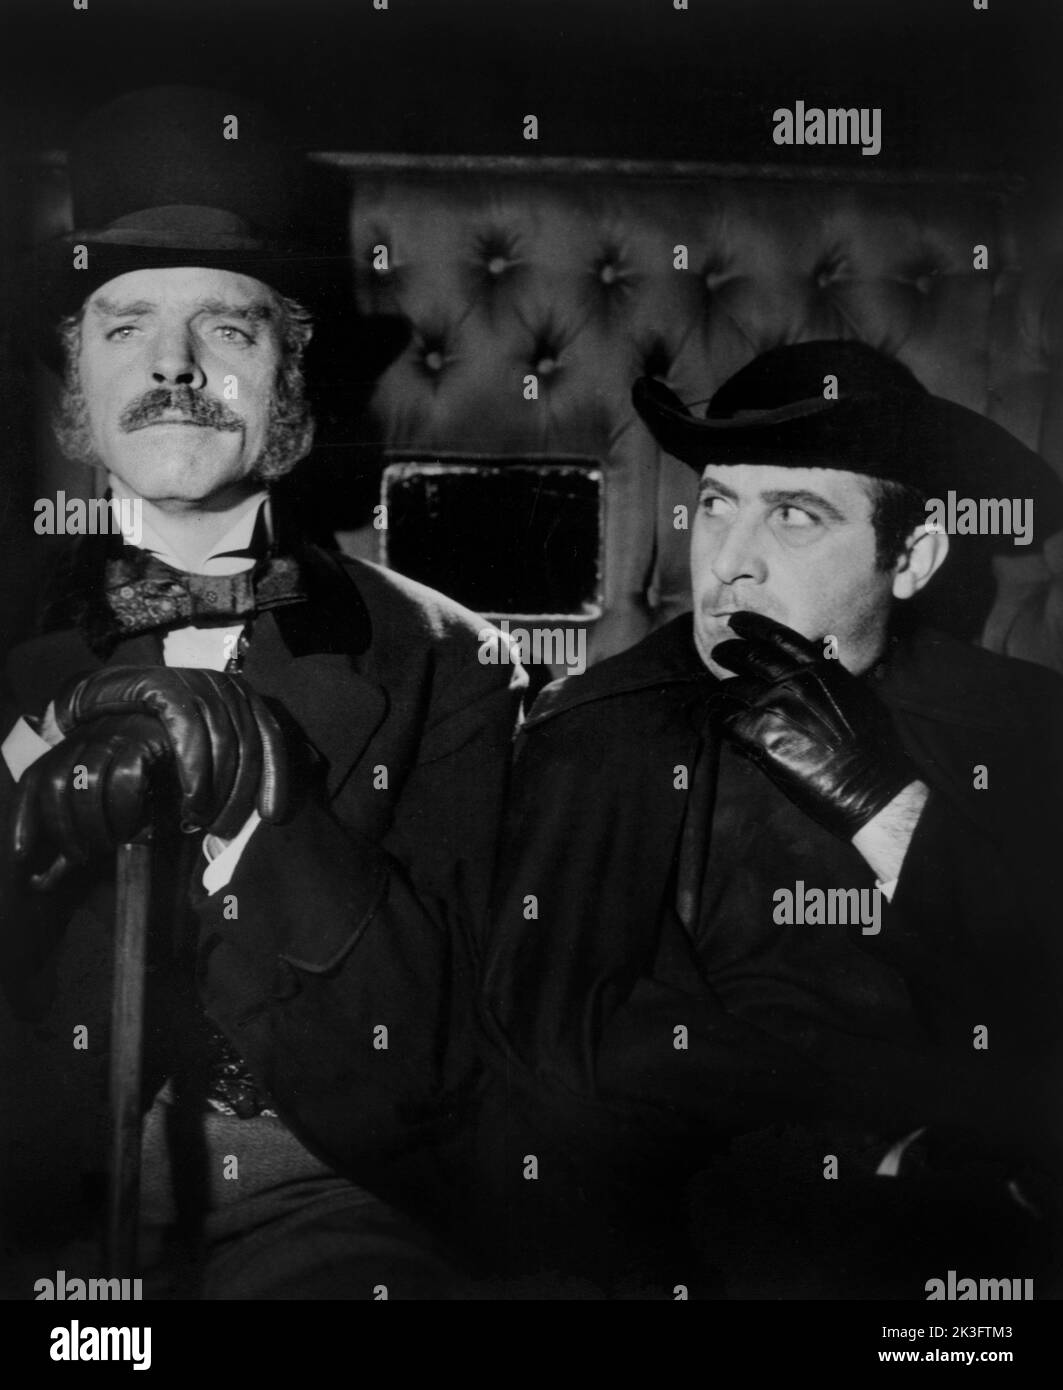 Burt Lancaster, (izquierda) en el escenario de la película, 'El leopardo', italiano: Il Gattopardo, 20th Century-Fox, 1963 Foto de stock